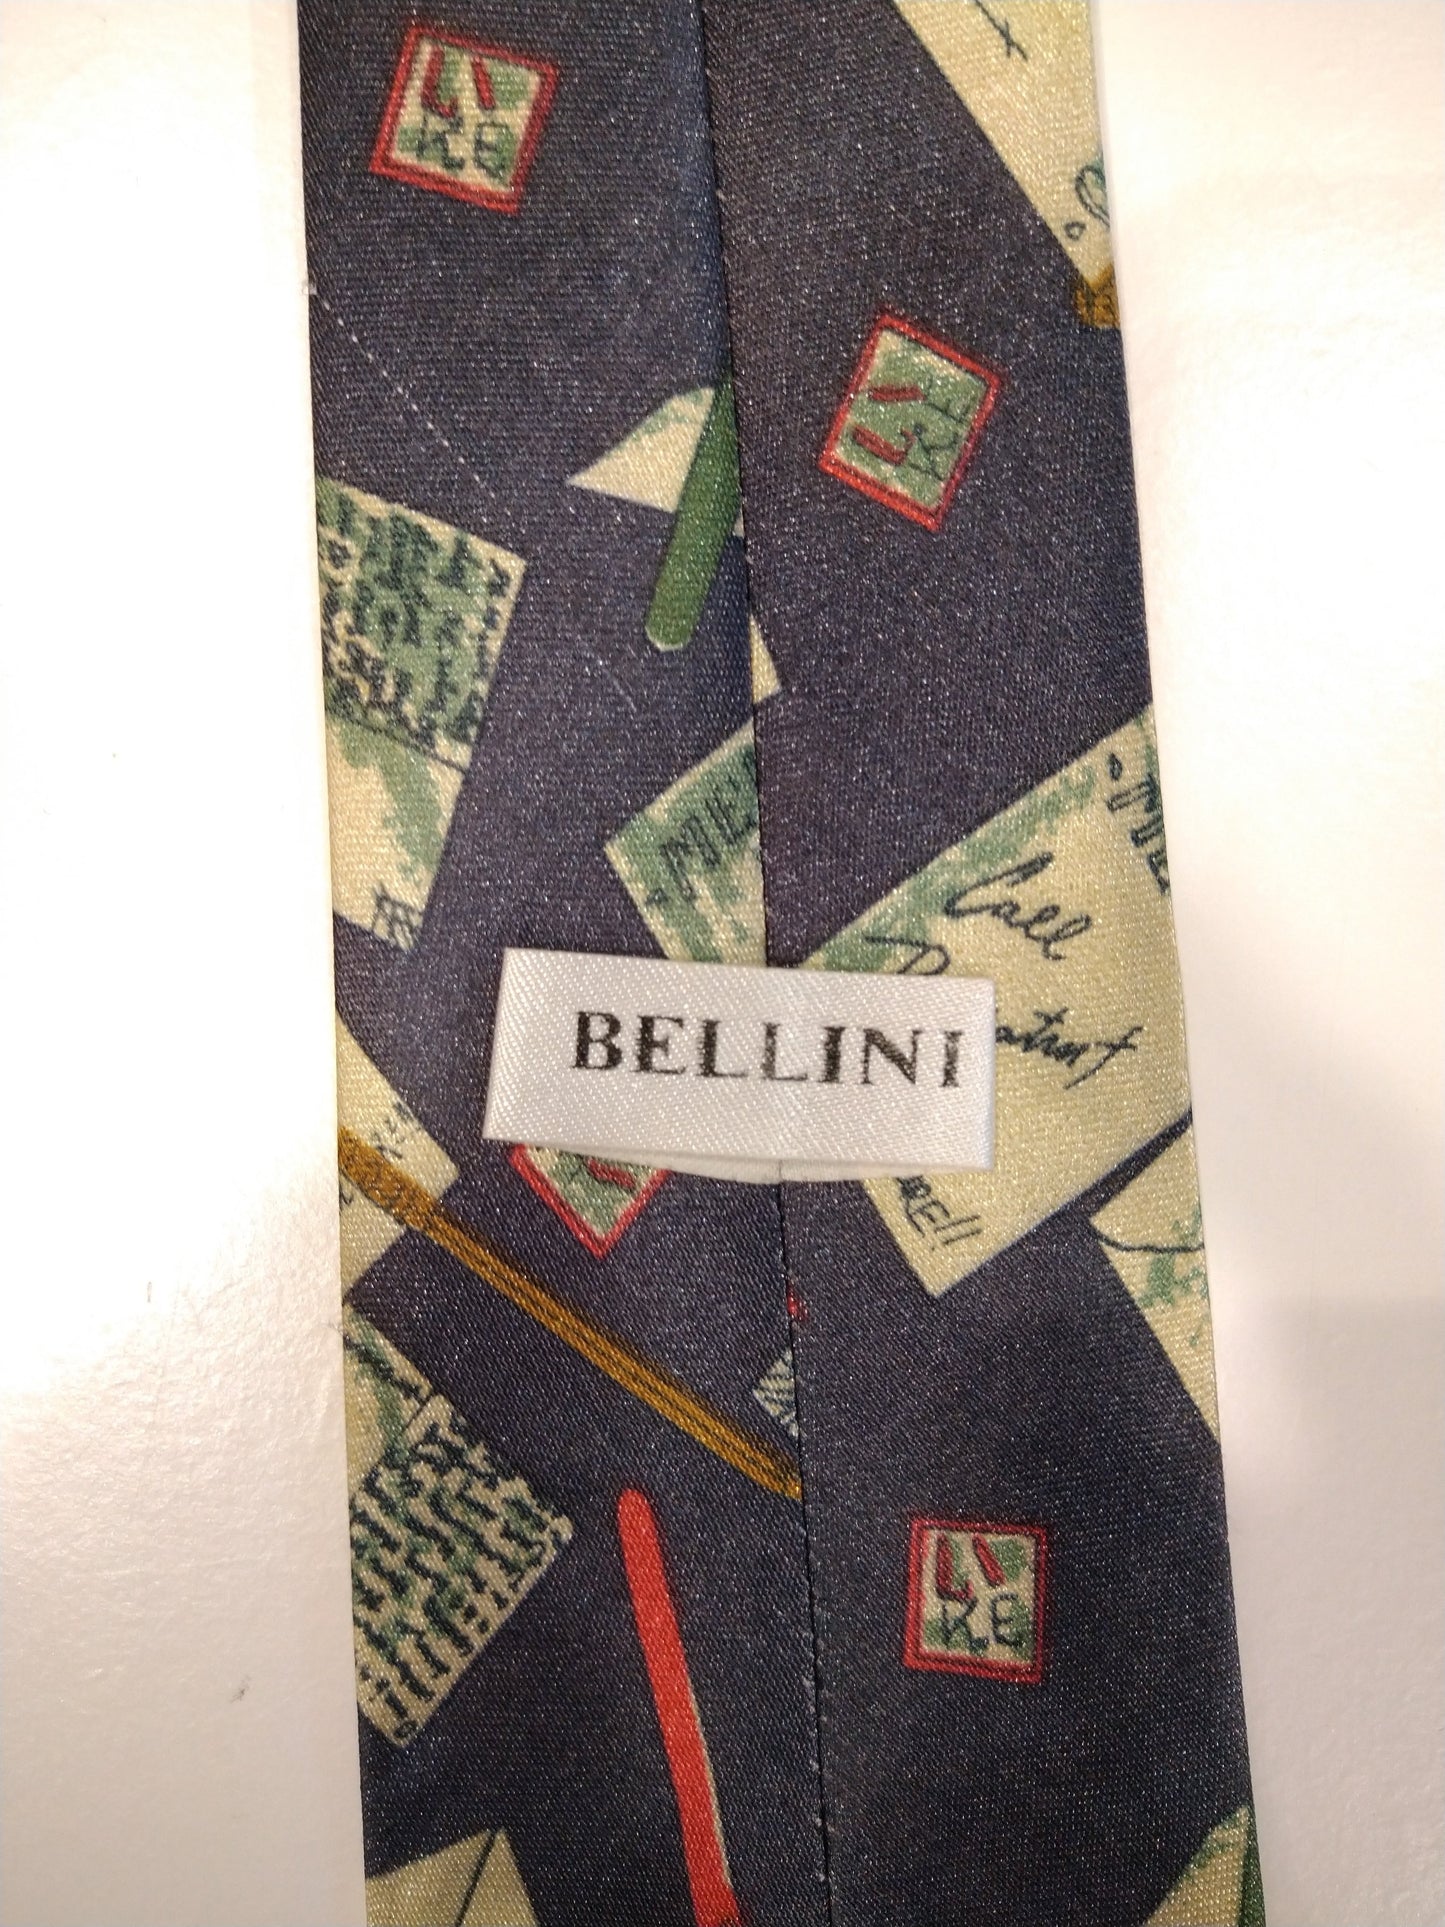 Bellini Polyester la corbata. Motivo colorido.